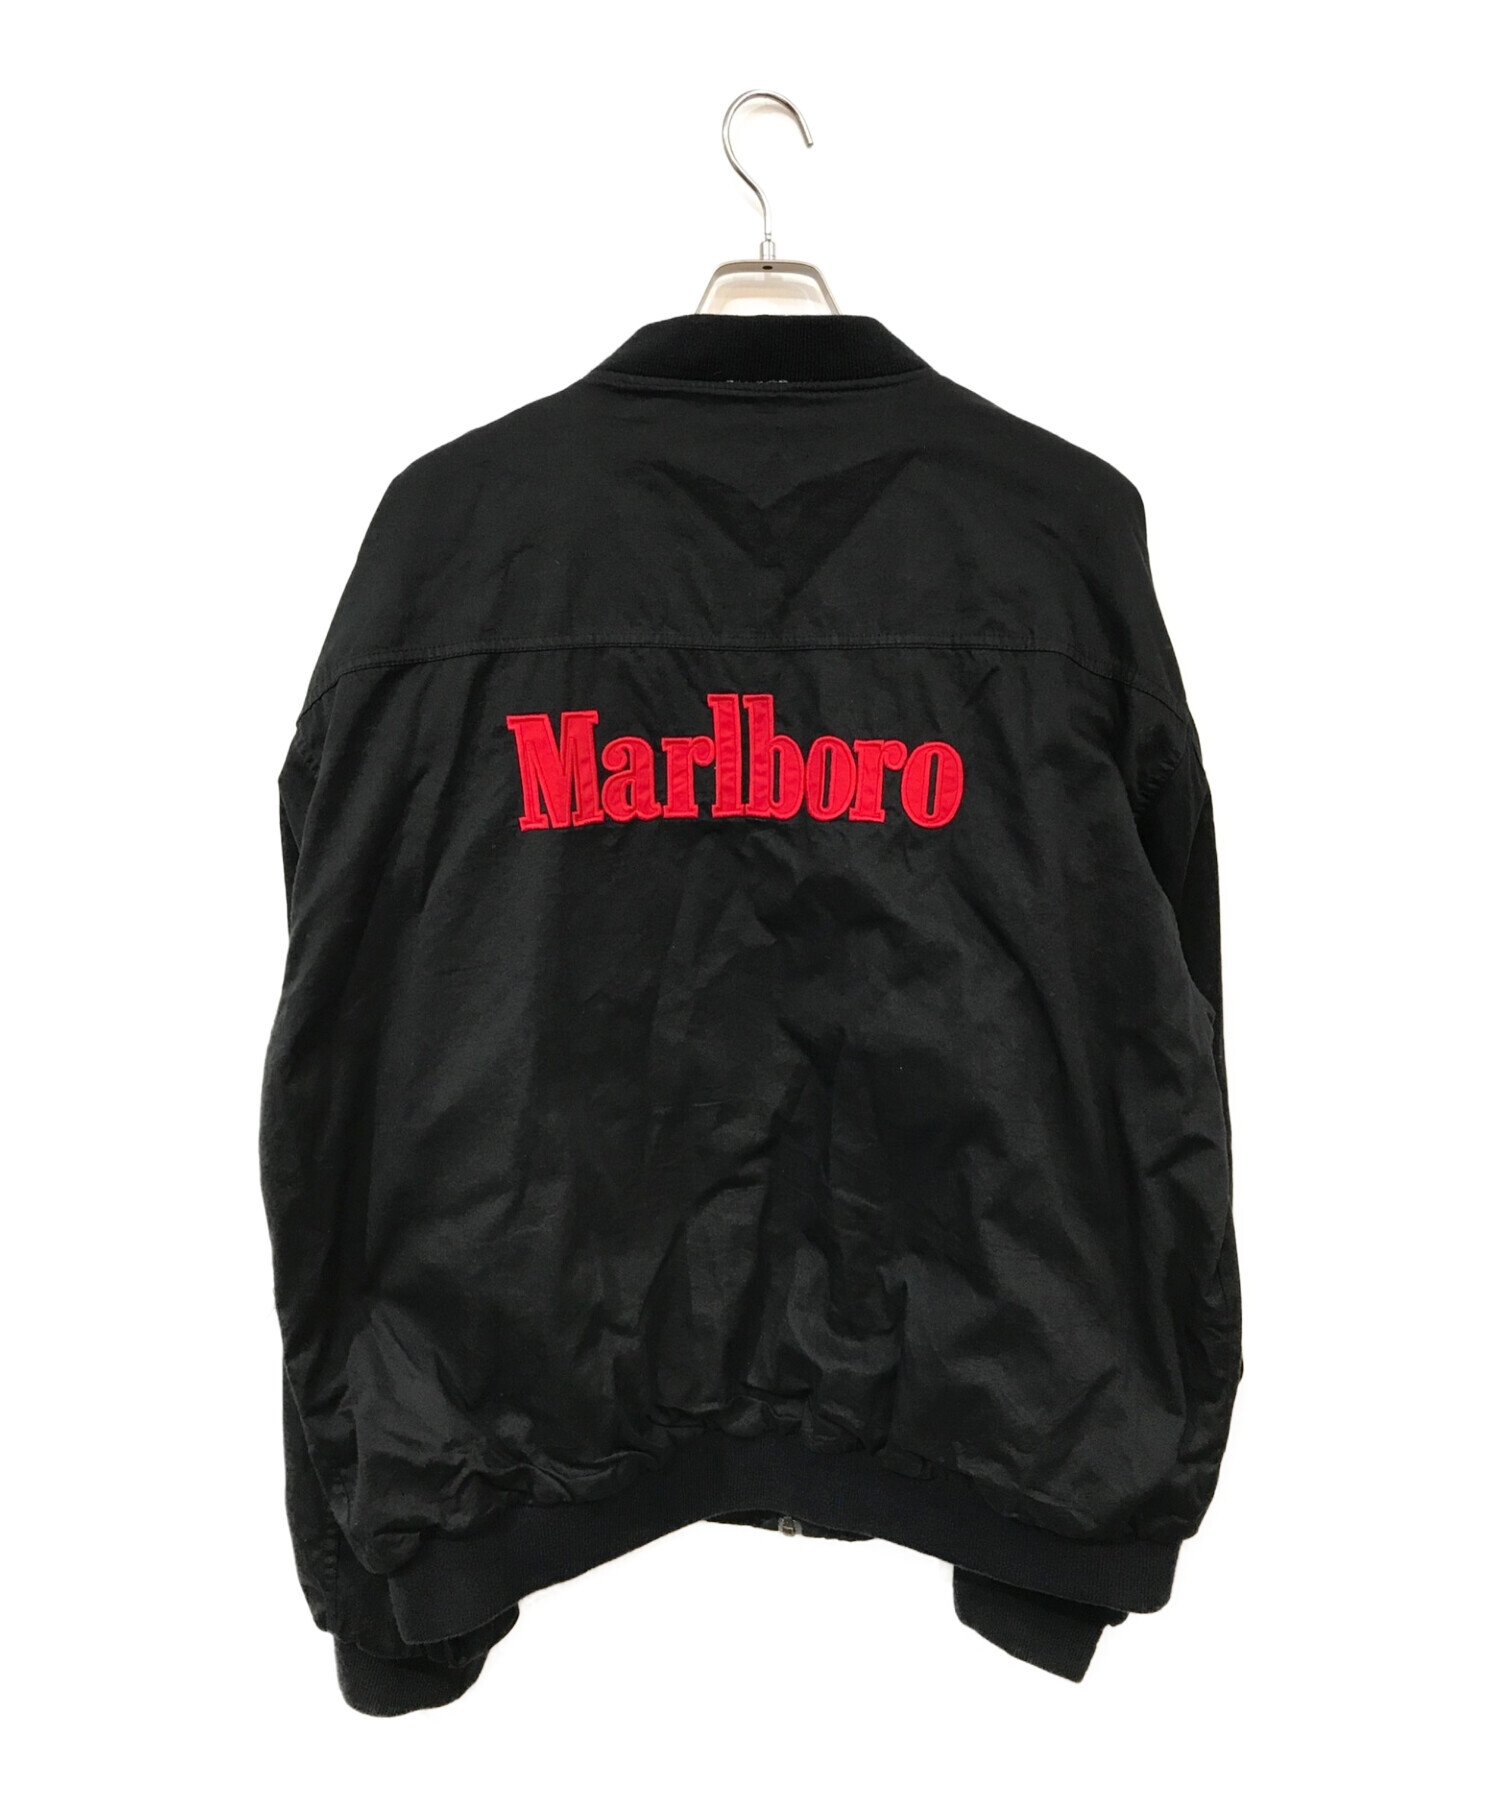 marlboro (マルボロ) リバーシブルブルゾン ブラック×レッド サイズ:XL